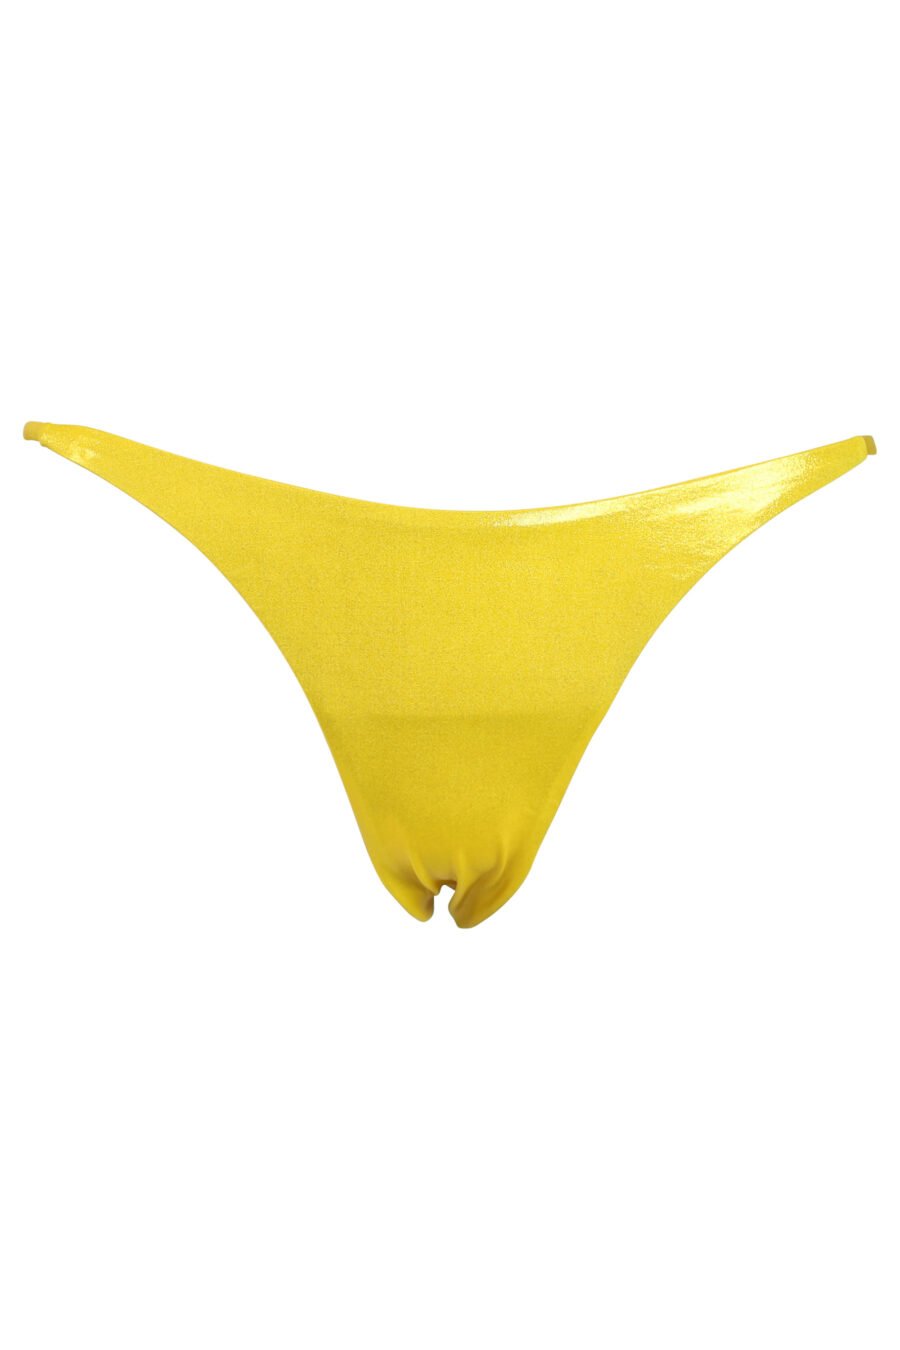 Leuchtend gelbe Bikinihose mit seitlicher Bindung - 889316269680